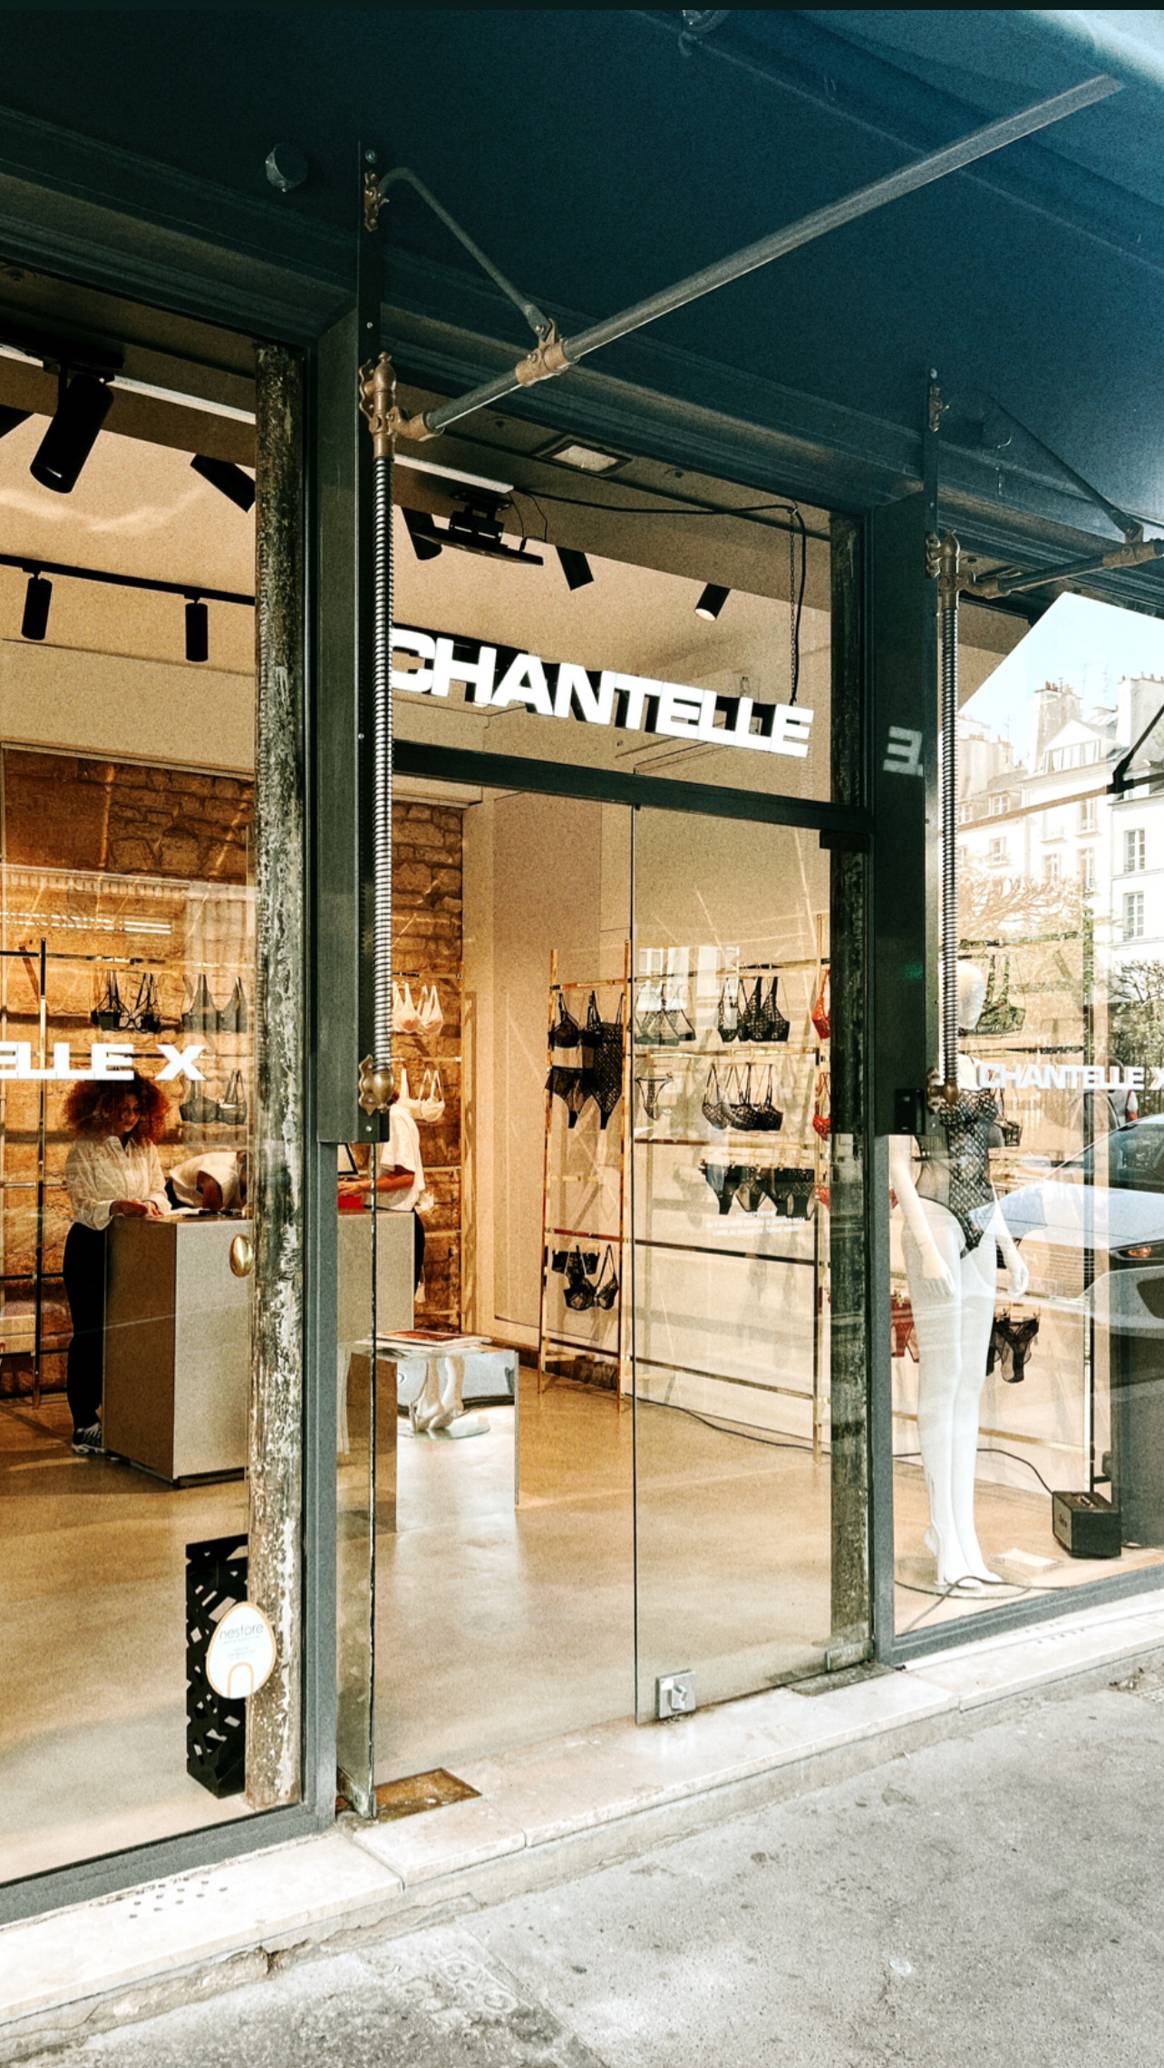 Chantelle inaugure un pop-up store dans le Marais